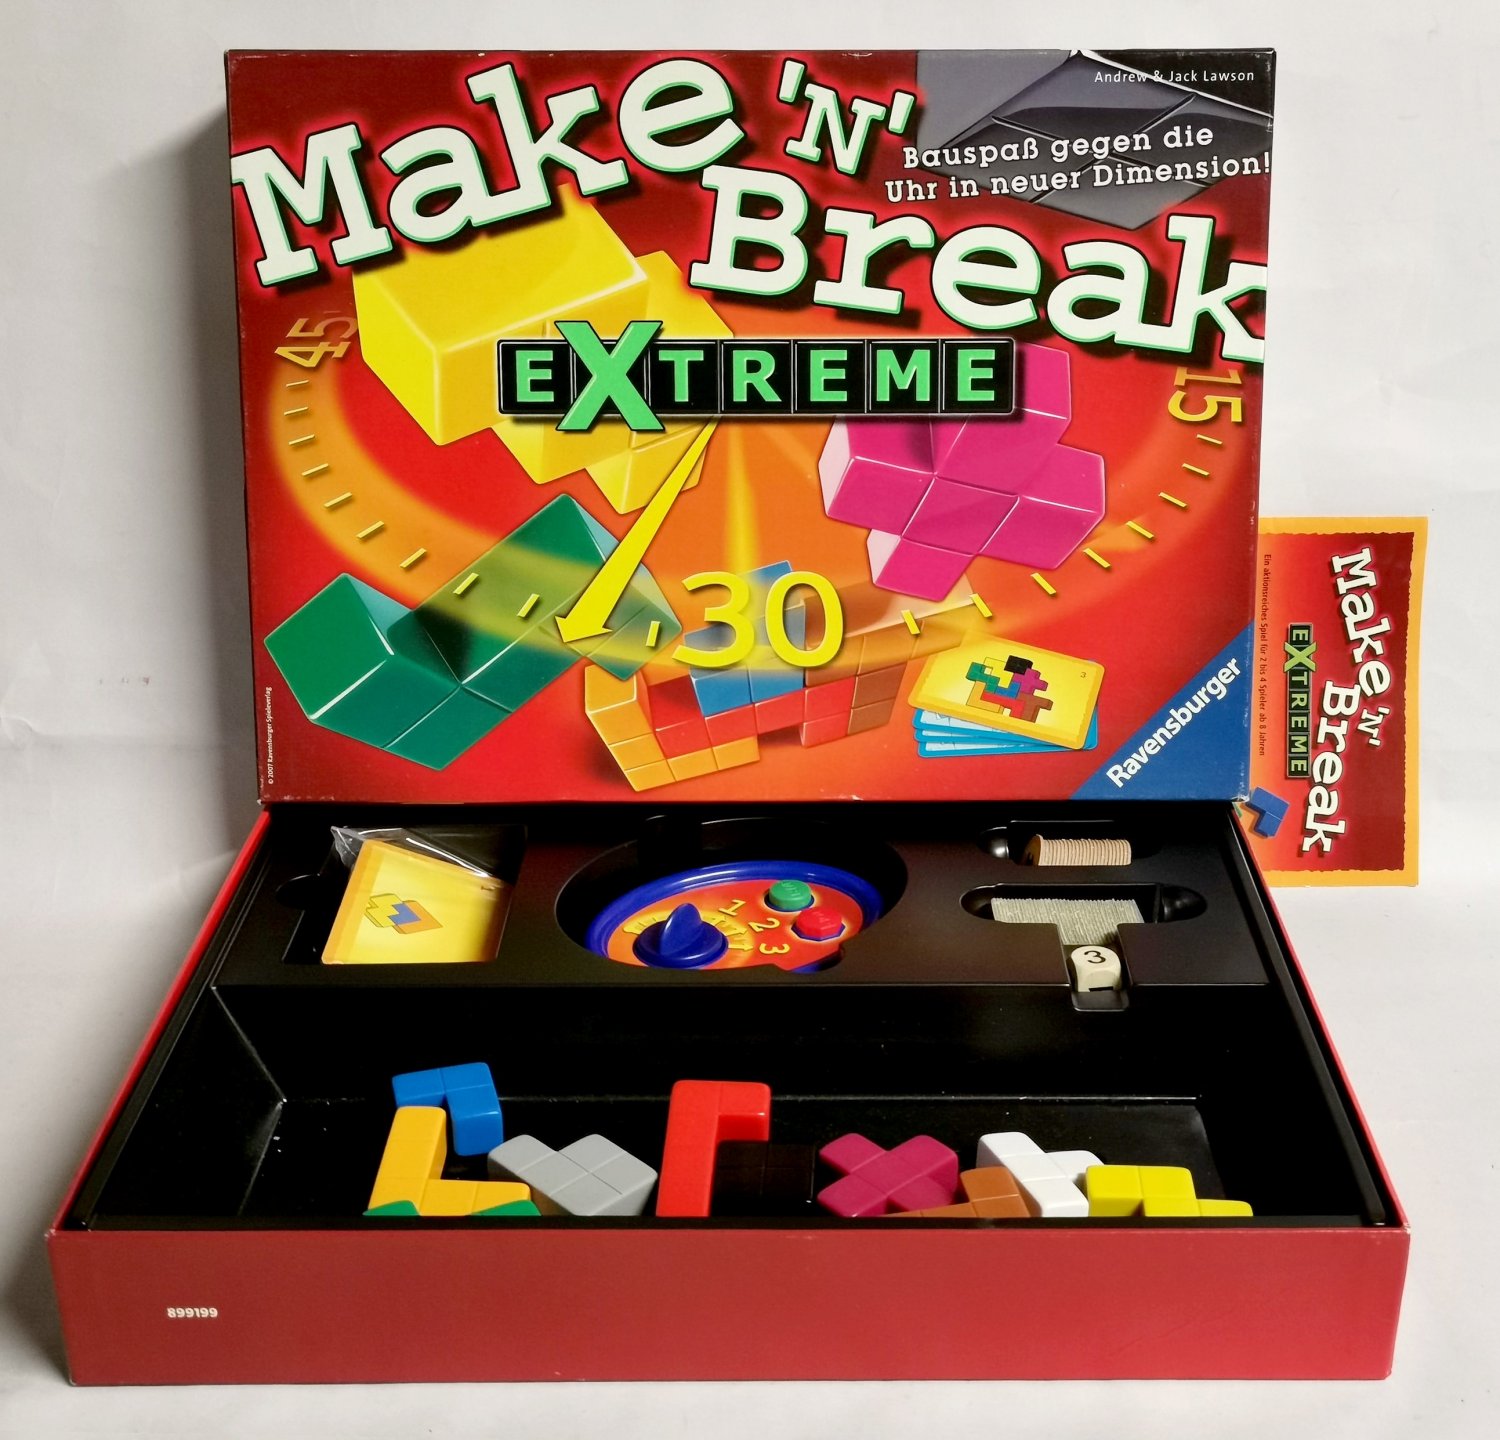 Make 'n' Break Extreme 2007 Ravensburger 264322 - ab 8 …“ (Andrew und Jack  Lawson) – Spiel gebraucht kaufen – A02pfrhw41ZZf